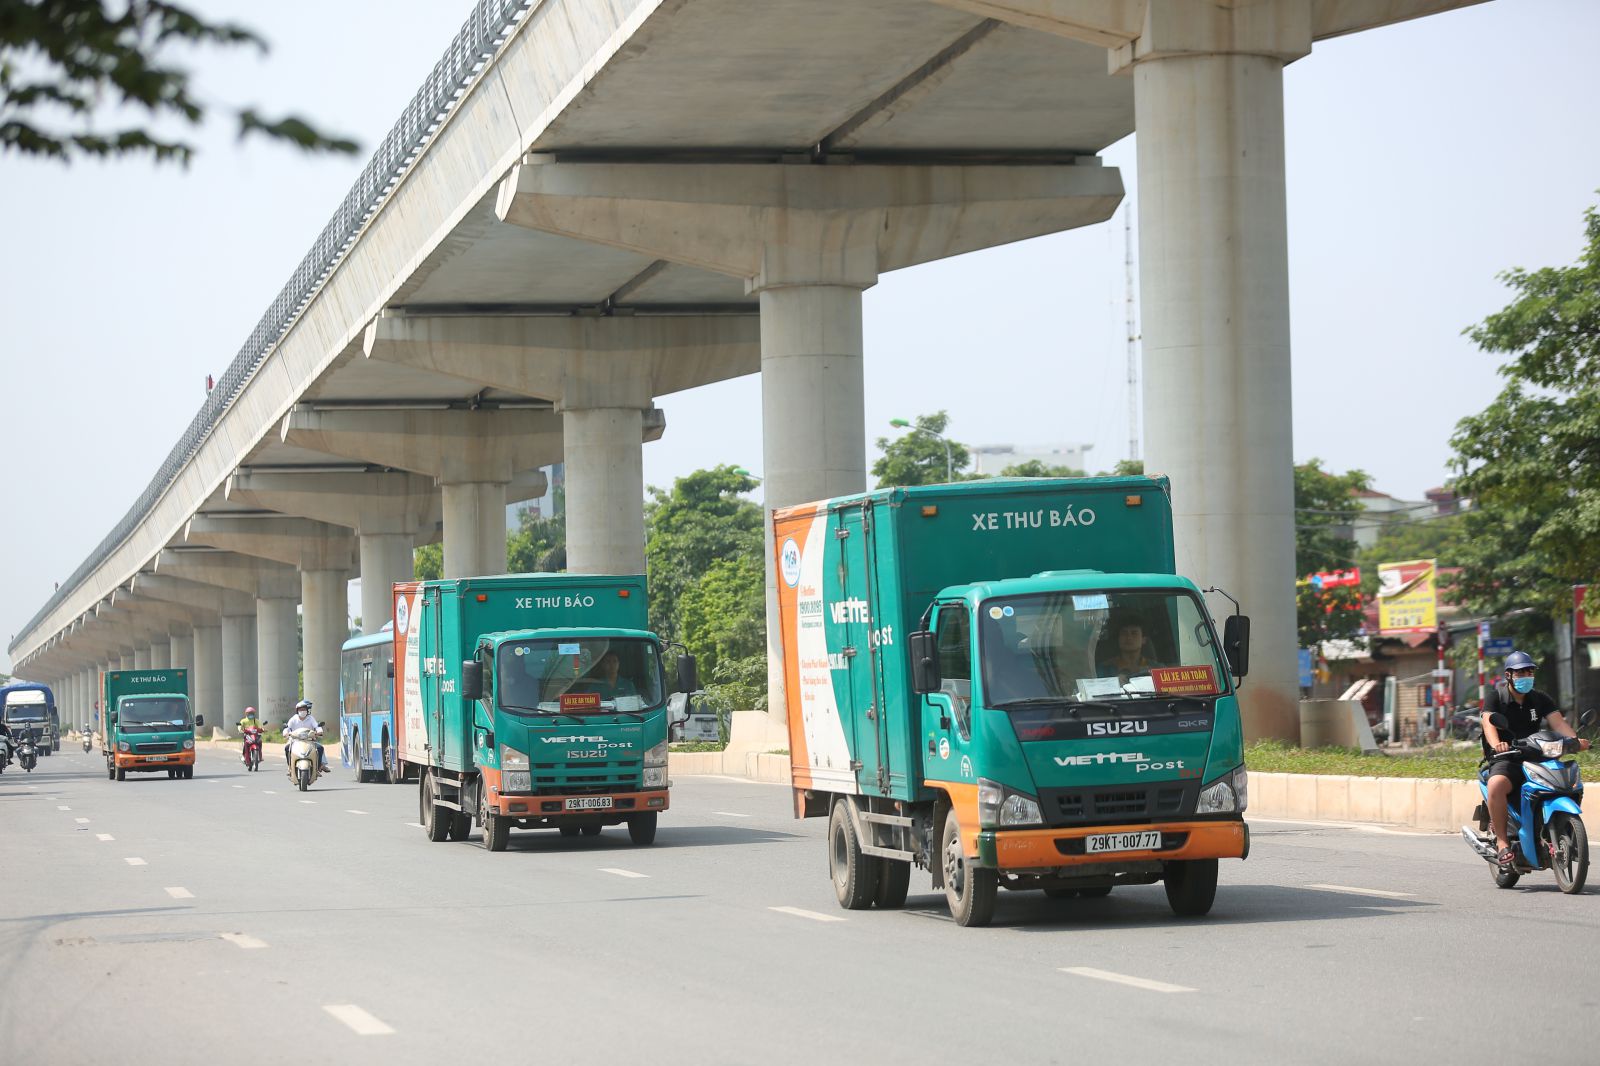 Với mục tiêu trở thành Công ty logistics số 1 Việt Nam dựa trên nền tảng công nghệ cao, trong thời gian tới Viettel Post sẽ lấy logistics làm cốt lõi cho mọi giải pháp phát triển doanh thu.